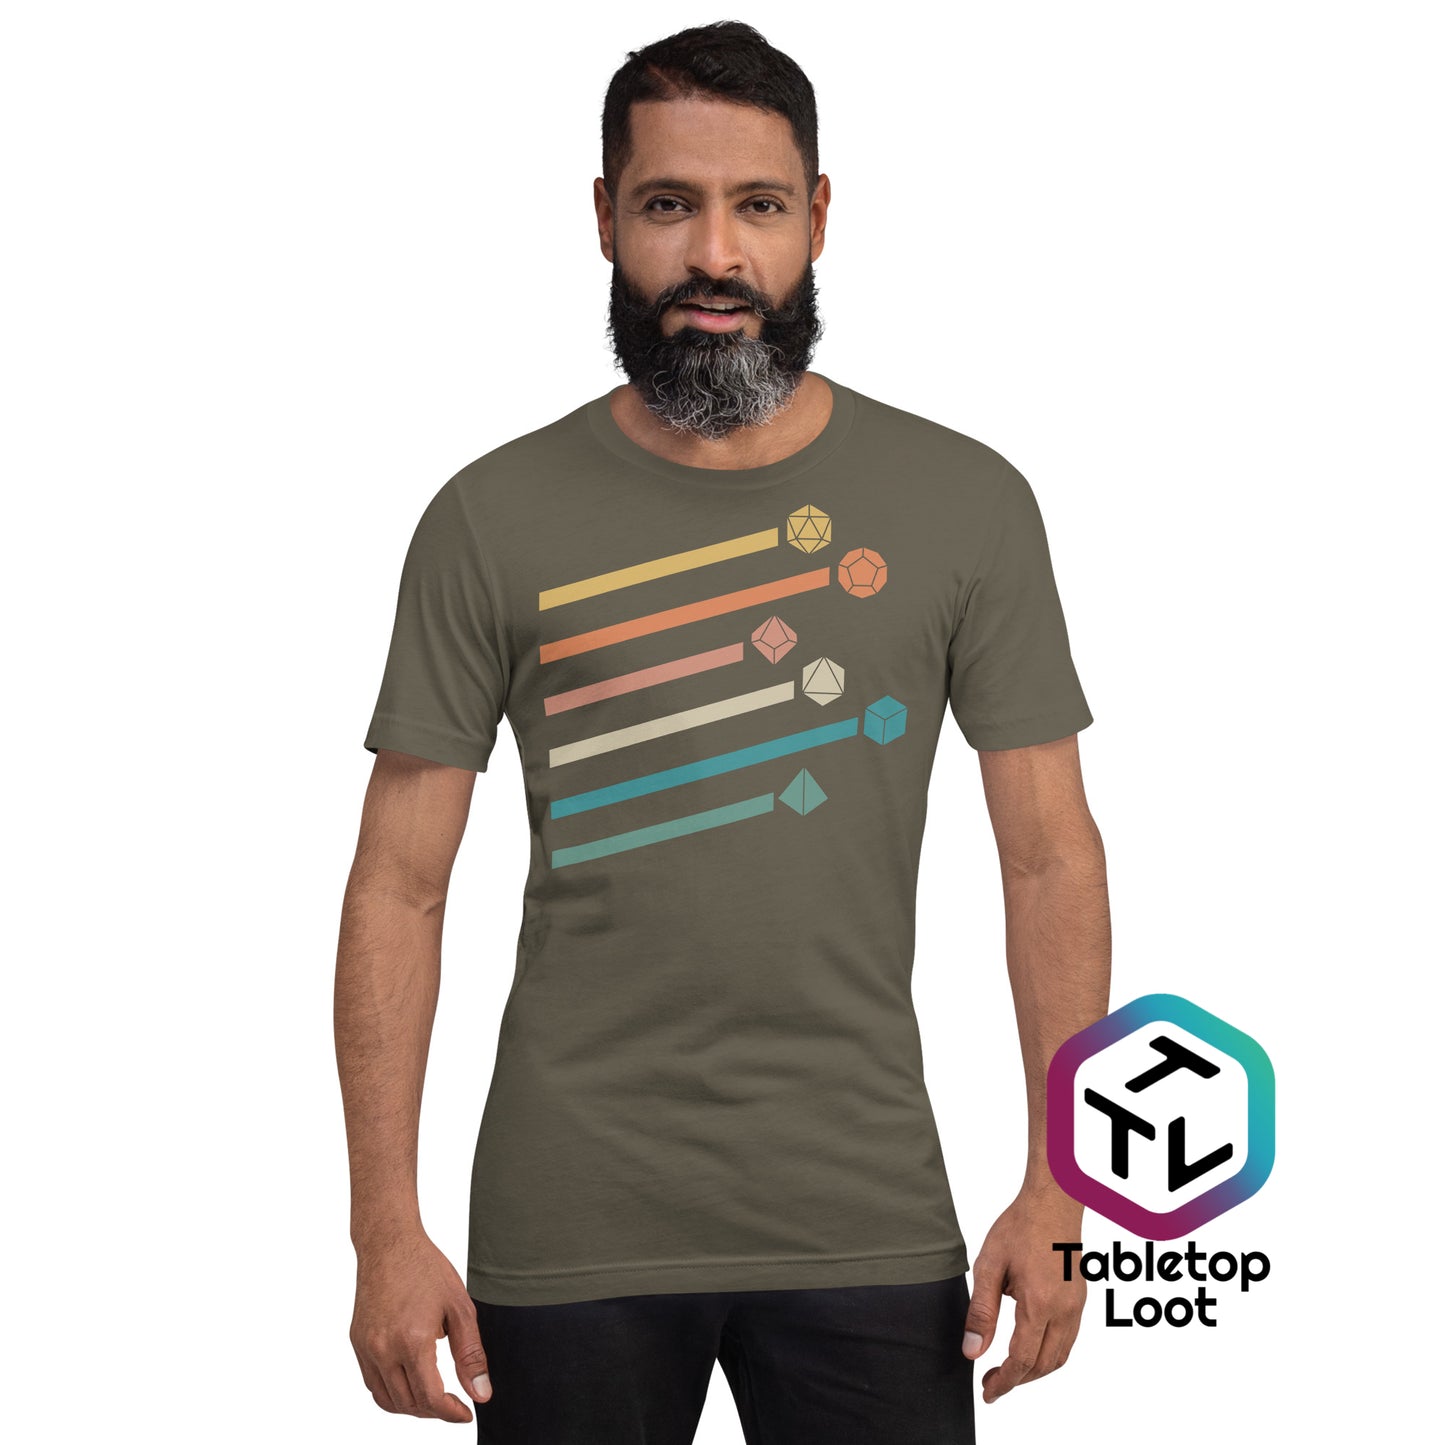 Camiseta unisex de dados retro